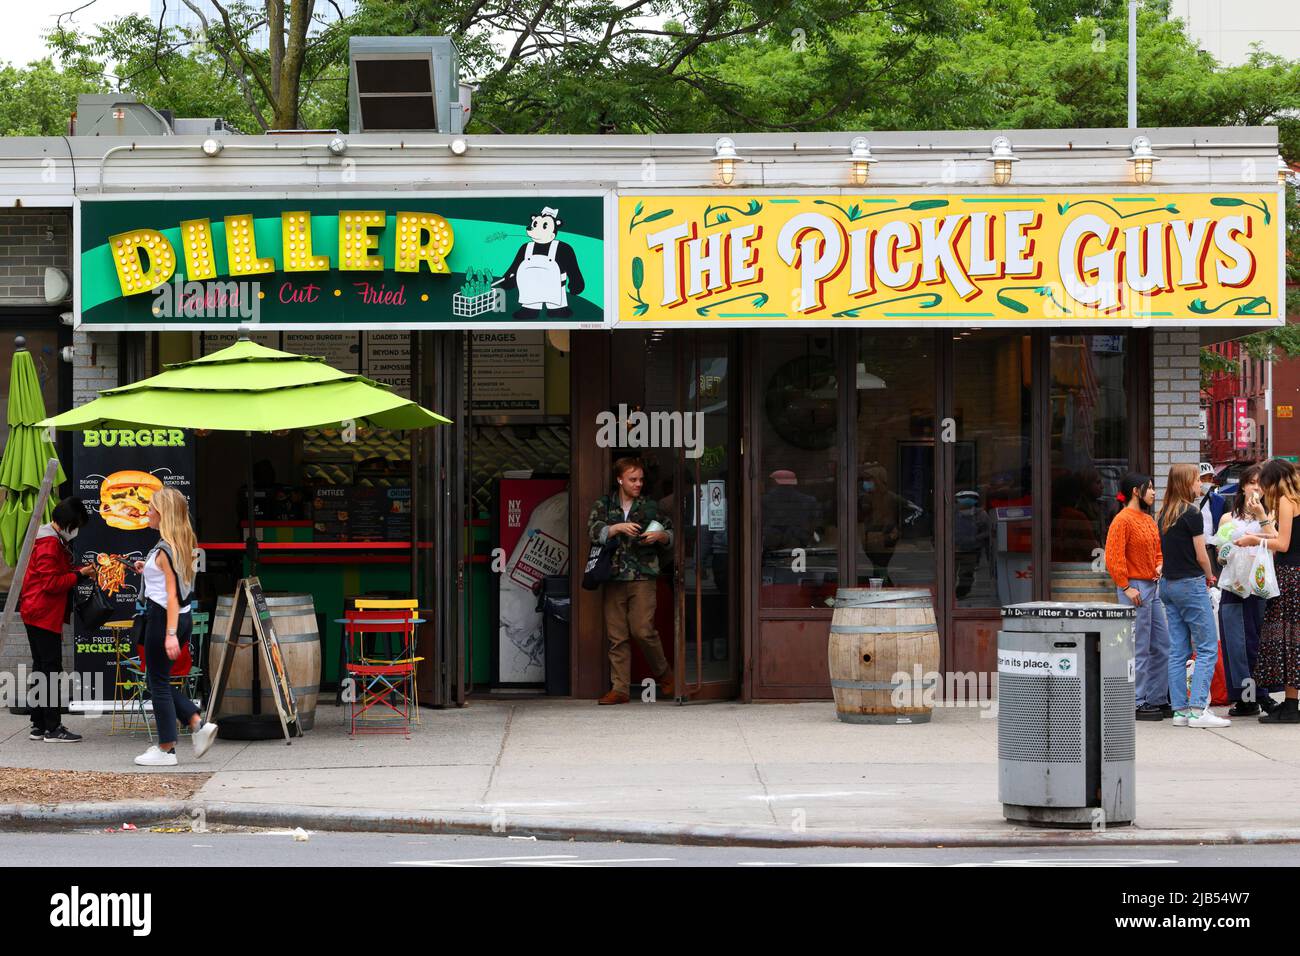 The Pickle Guys, Diller, 357 Grand St, Nueva York, Nueva York, foto del escaparate de una tienda de pickle, y un restaurante vegano kosher en el Lower East Side. Foto de stock